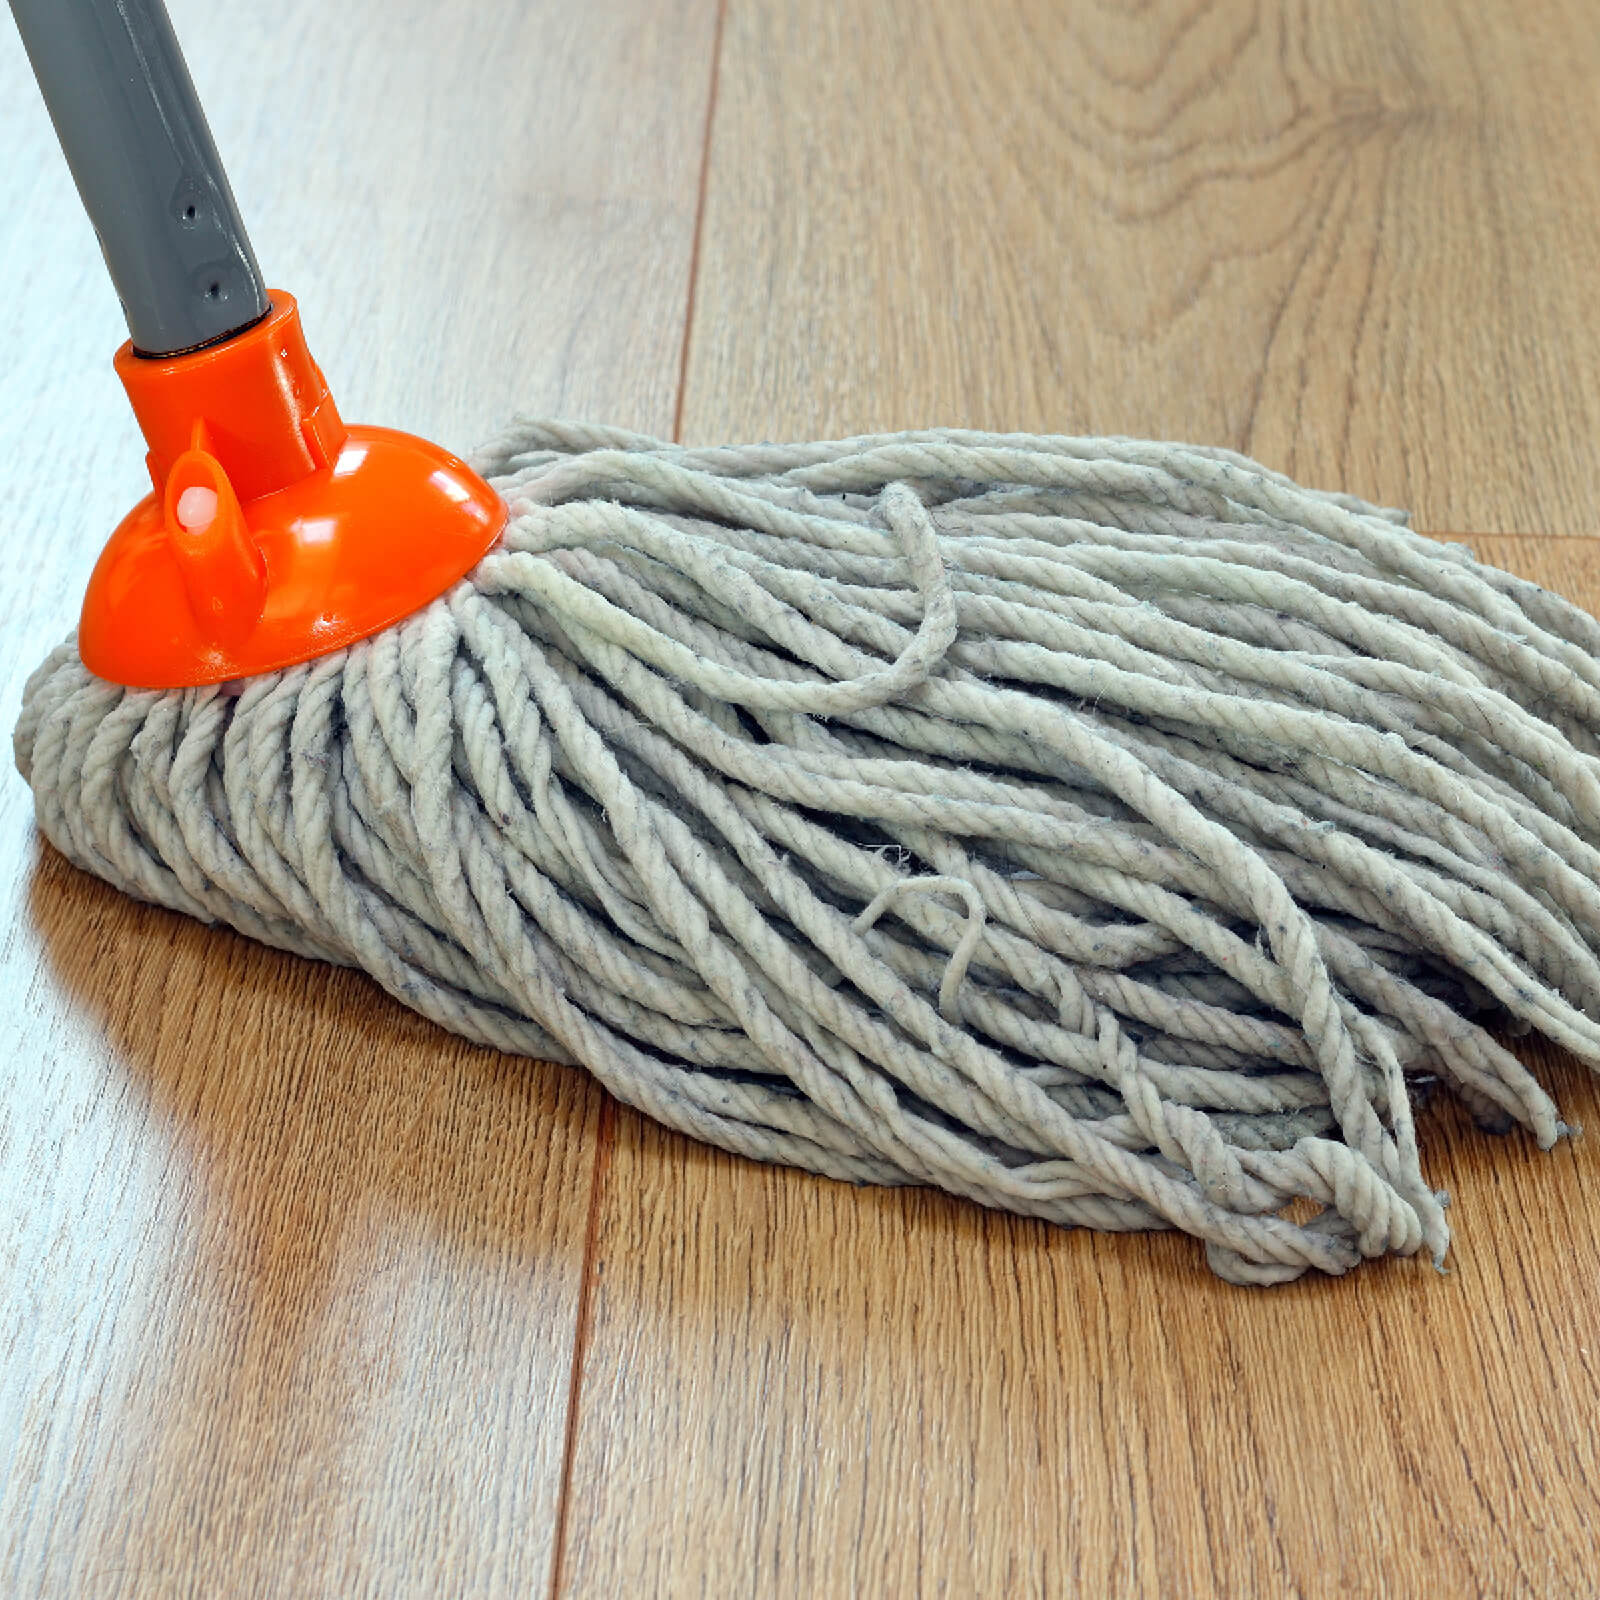 Mopping hardwood flooring | Ron's Carpet & Design